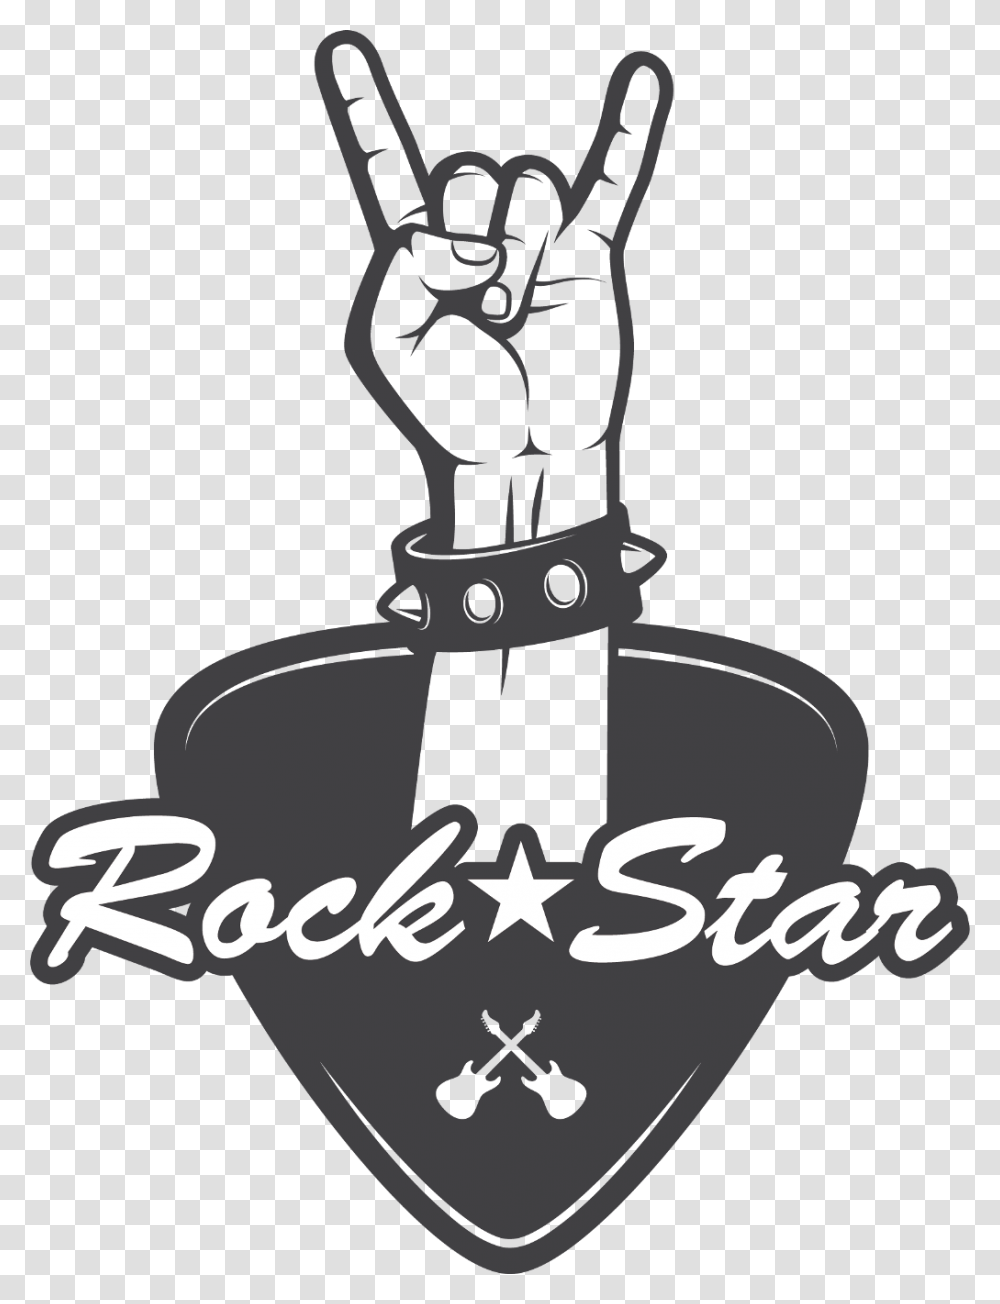 Rock Star Rockstar, Hand, Stencil, Fist Transparent Png